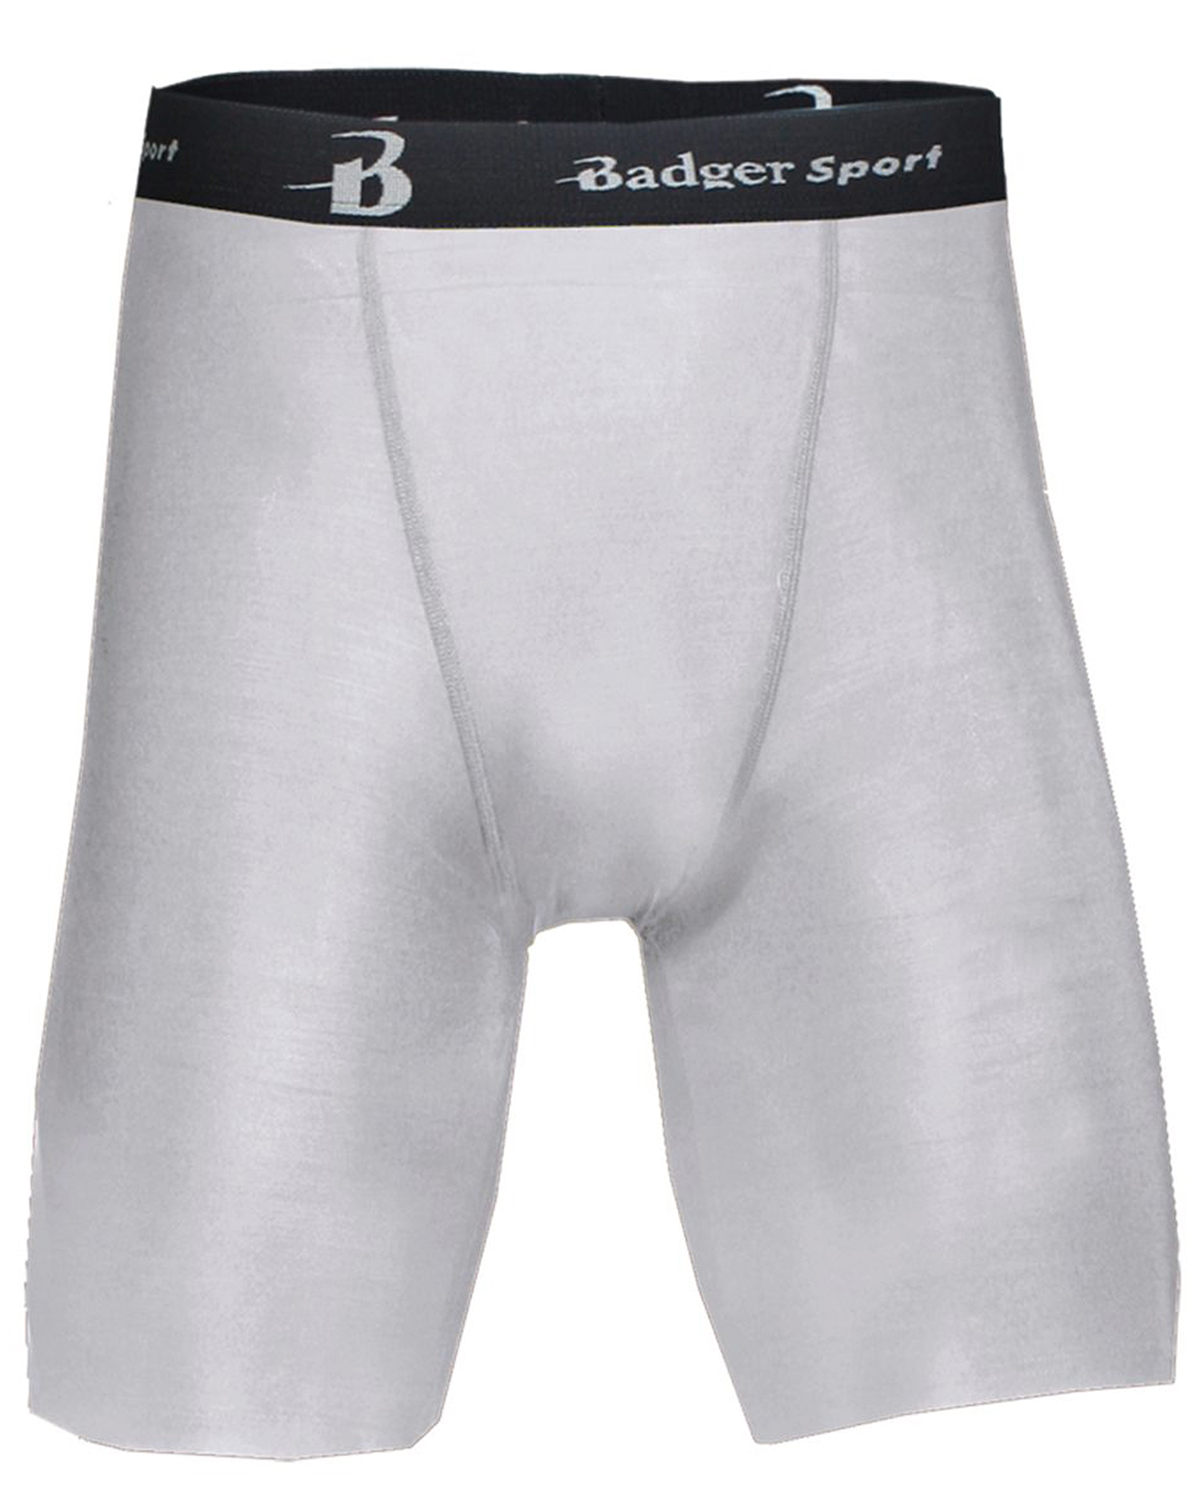 Badger Sport 4607 - Men's 8" Inseam B-Fit Blended Compression Short